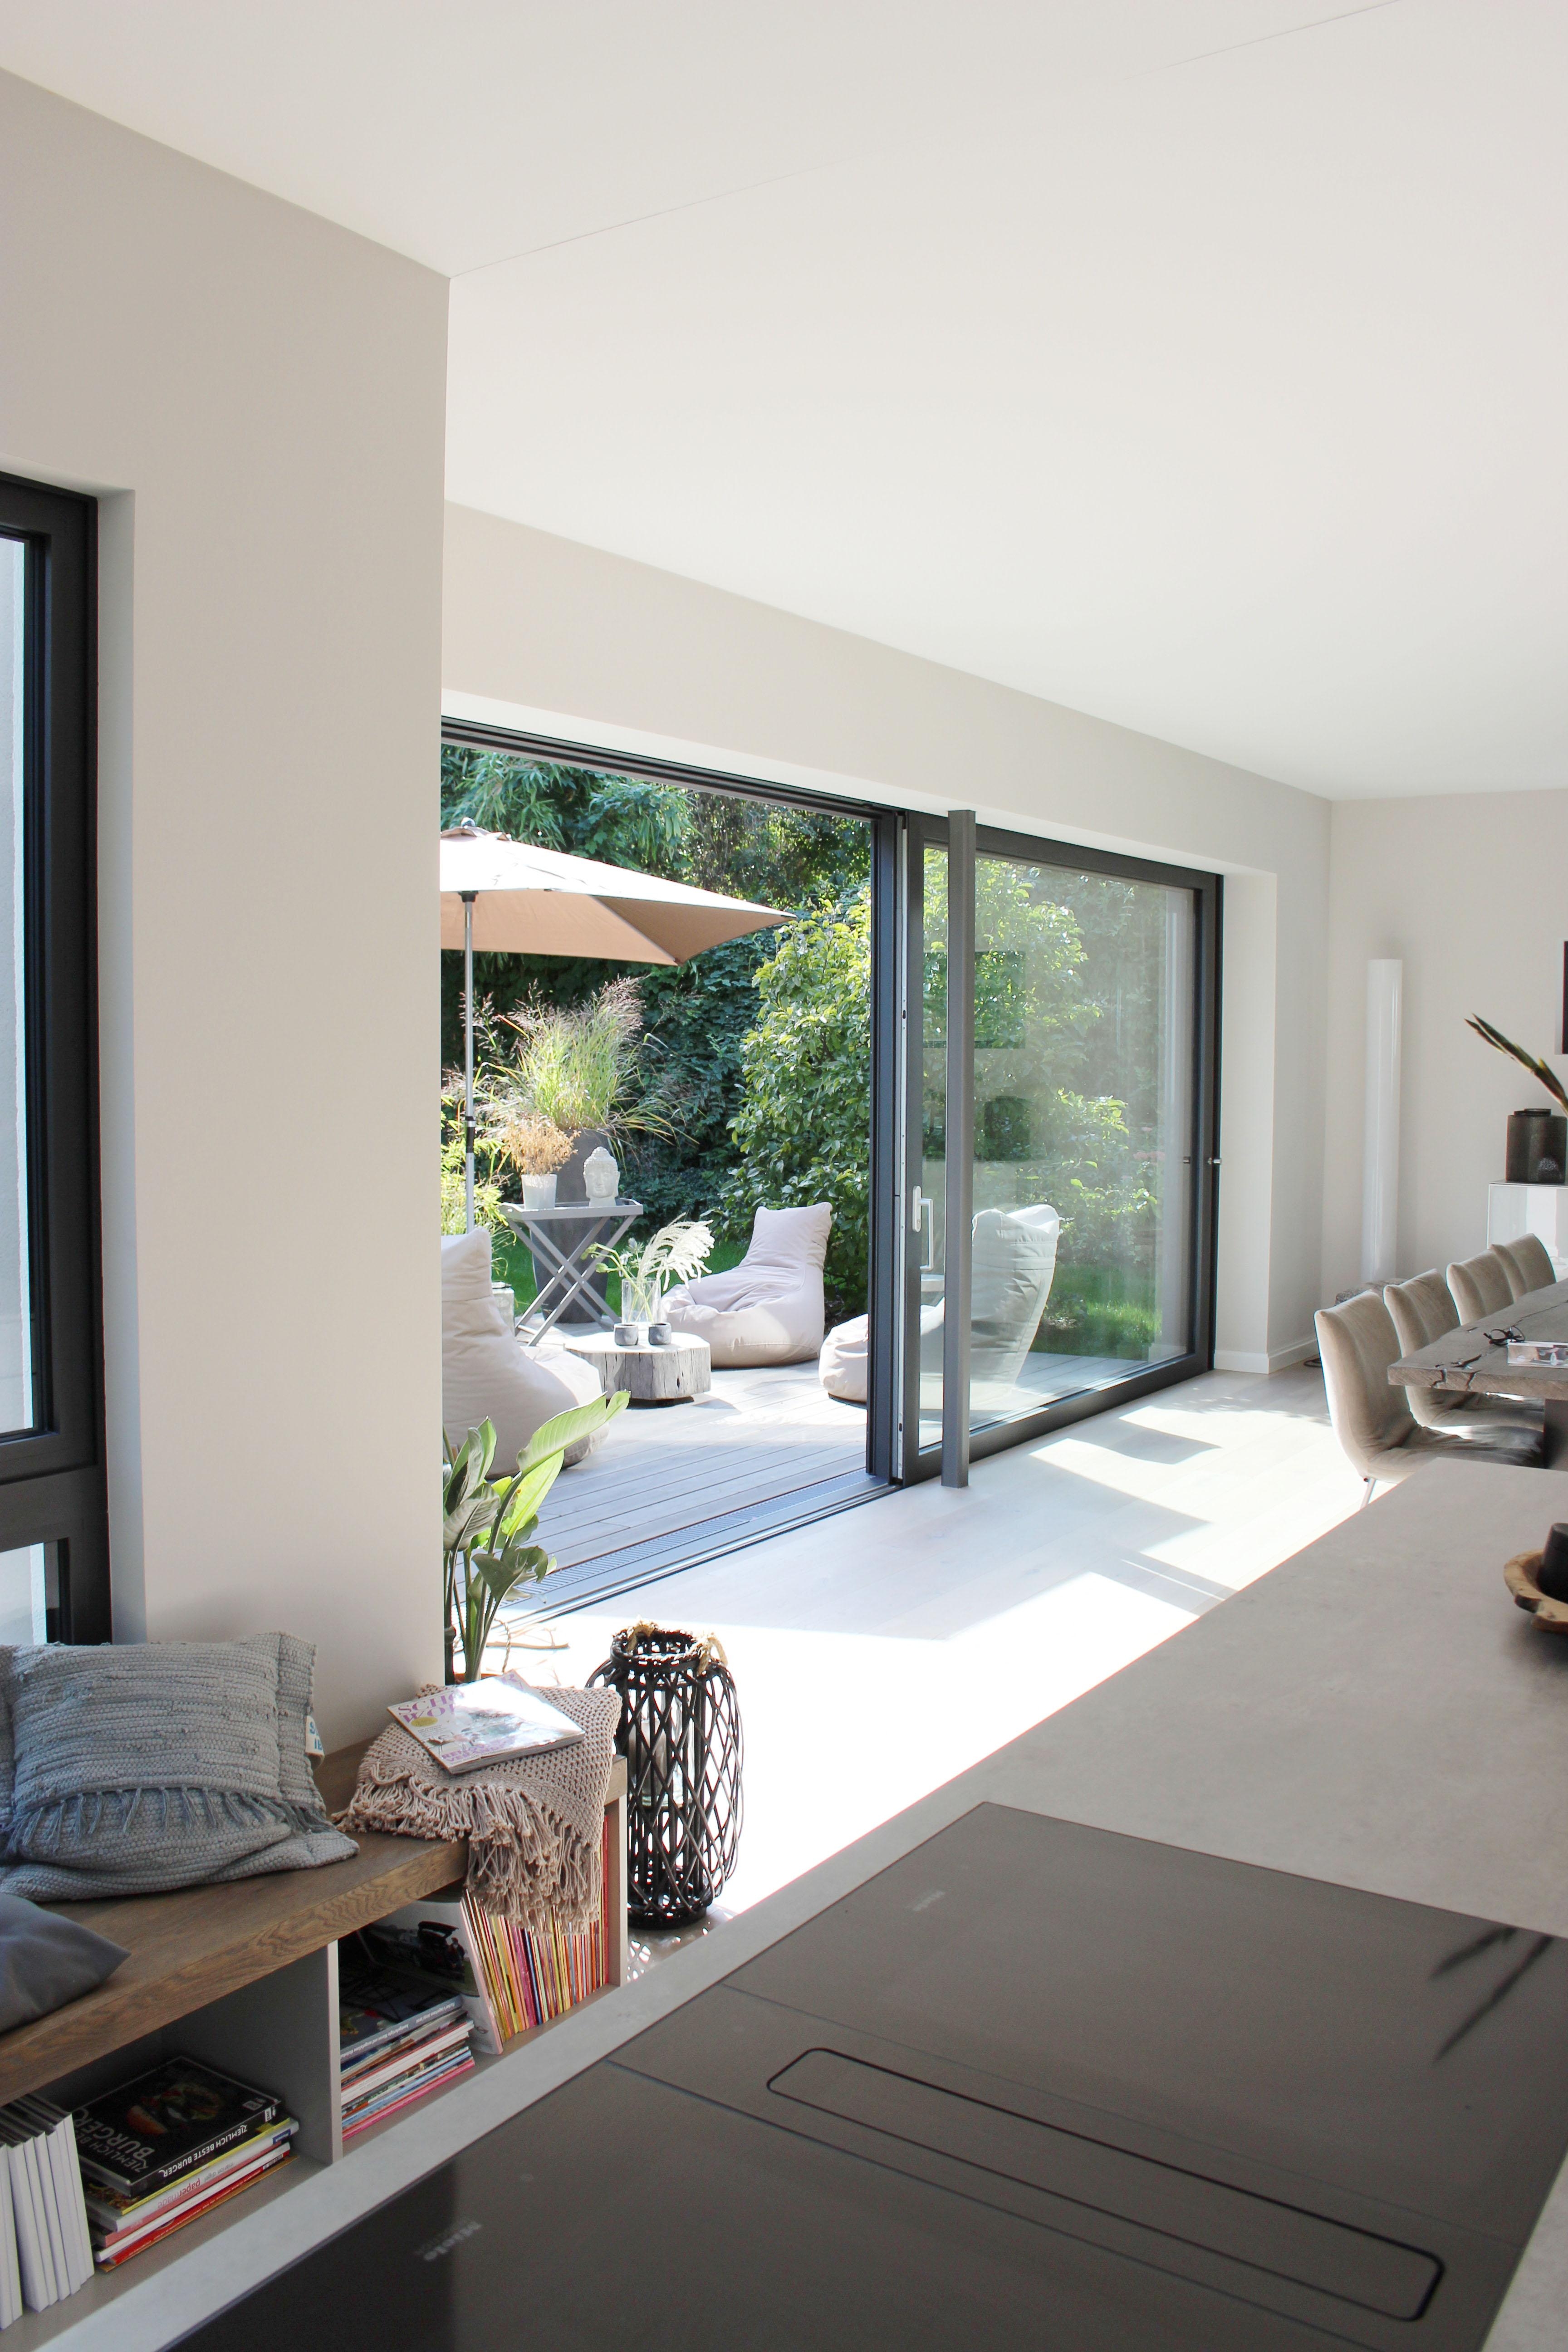 Der offene Wohn-/Essbereich 🖤
#homeinspo #living #haussanierung #interiordesign #wohnzimmer #umbau #livingroom